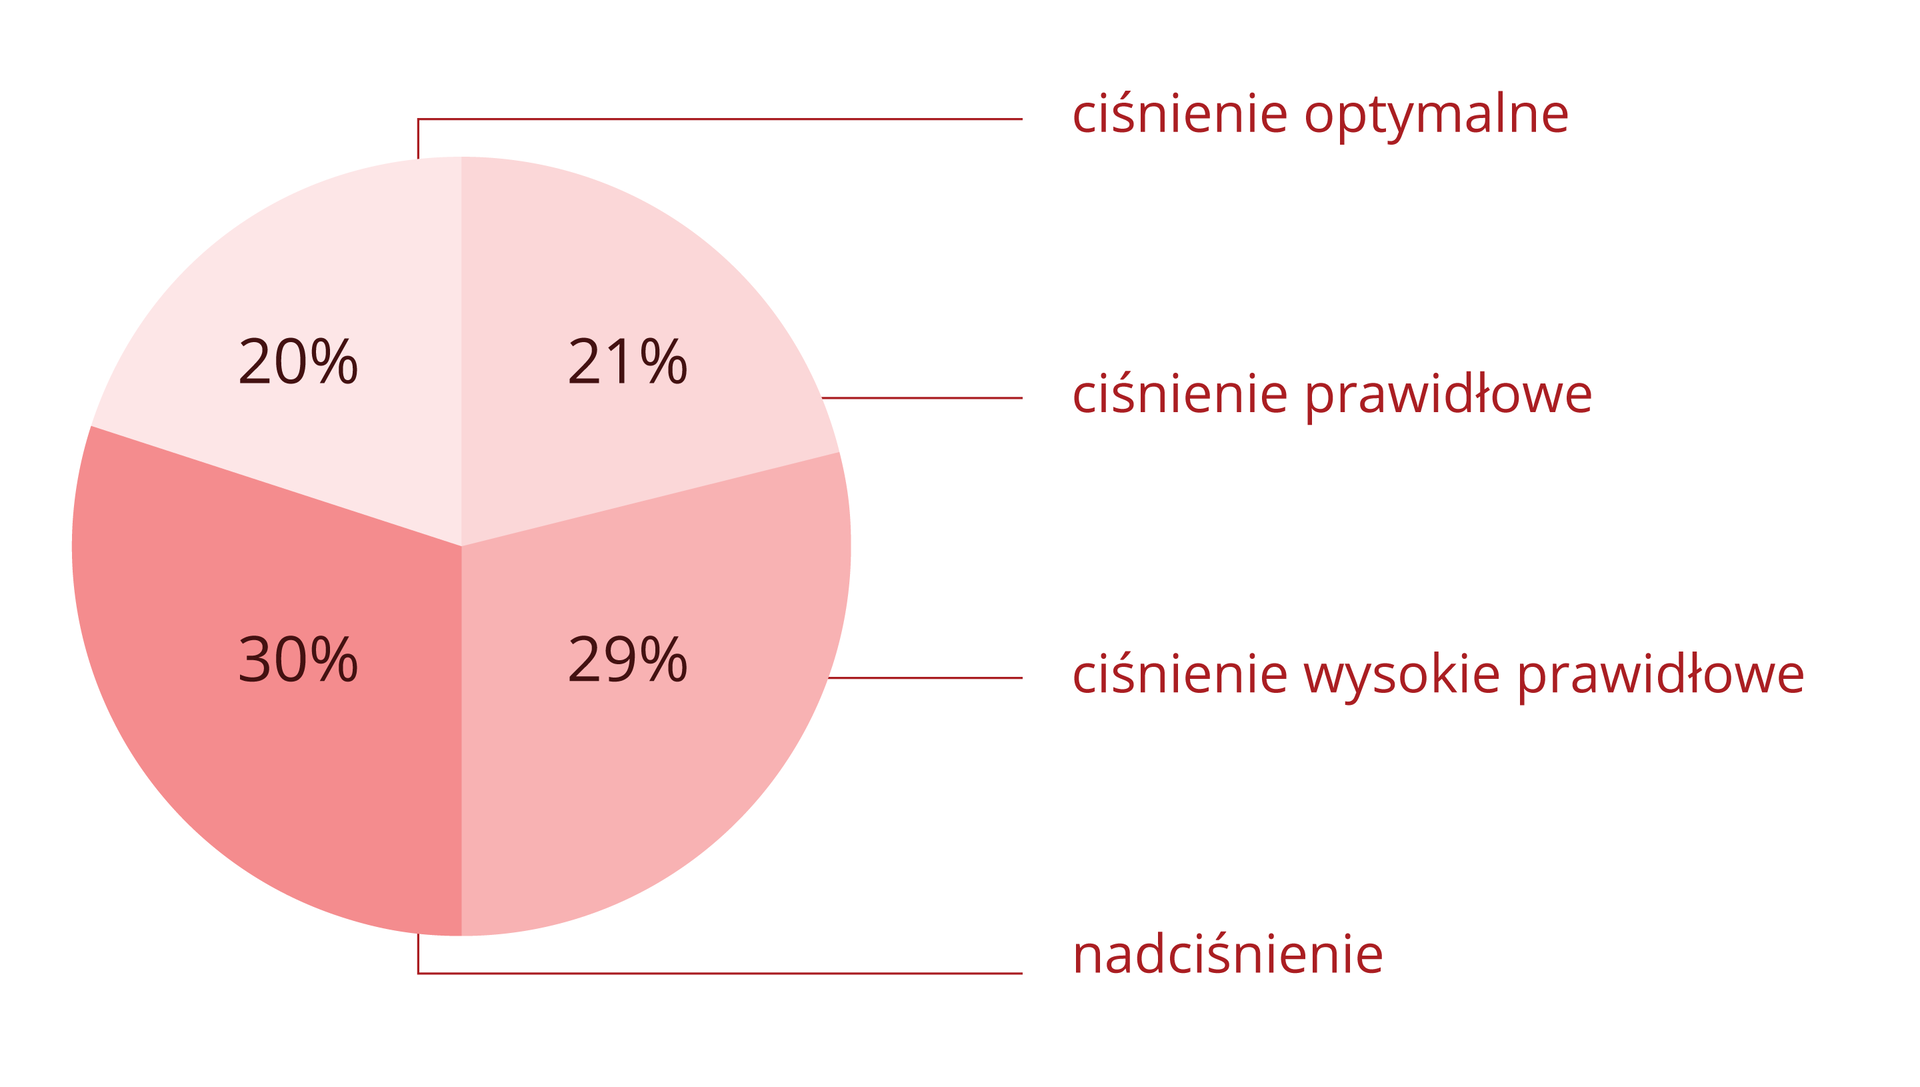 Diagram kołowy w odcieniach różowego przedstawia rozkład procentowy różnych wartości ciśnienia tętniczego u Polaków. Ciśnienie optymalne ma 20% Polaków, ciśnienie prawidłowe ma 21% Polaków, ciśnienie wysokie prawidłowe ma 29% Polaków, a nadciśnienie na 30% Polaków.